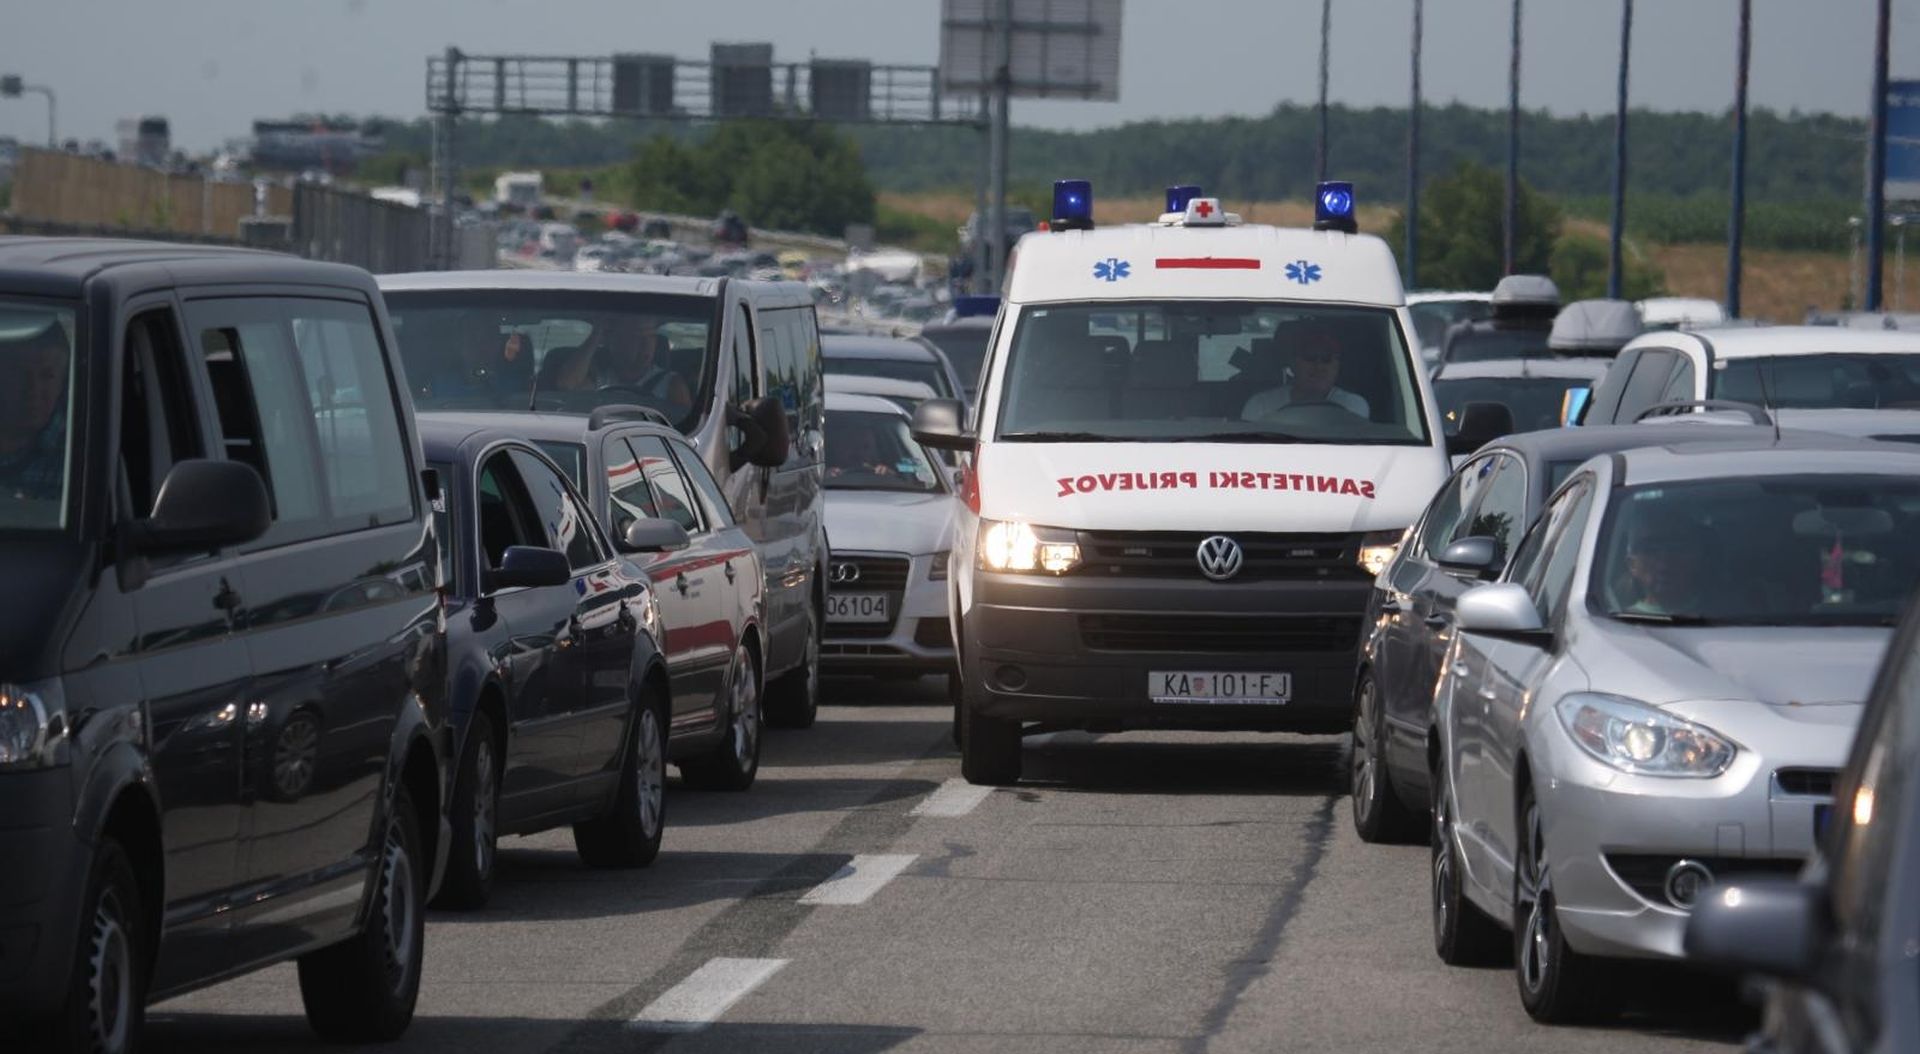 13.07.2013., Zagreb - Kolone automobila u smjeru mora na naplatnoj postaji Lucko. Photo: Grgur Zucko/PIXSELL